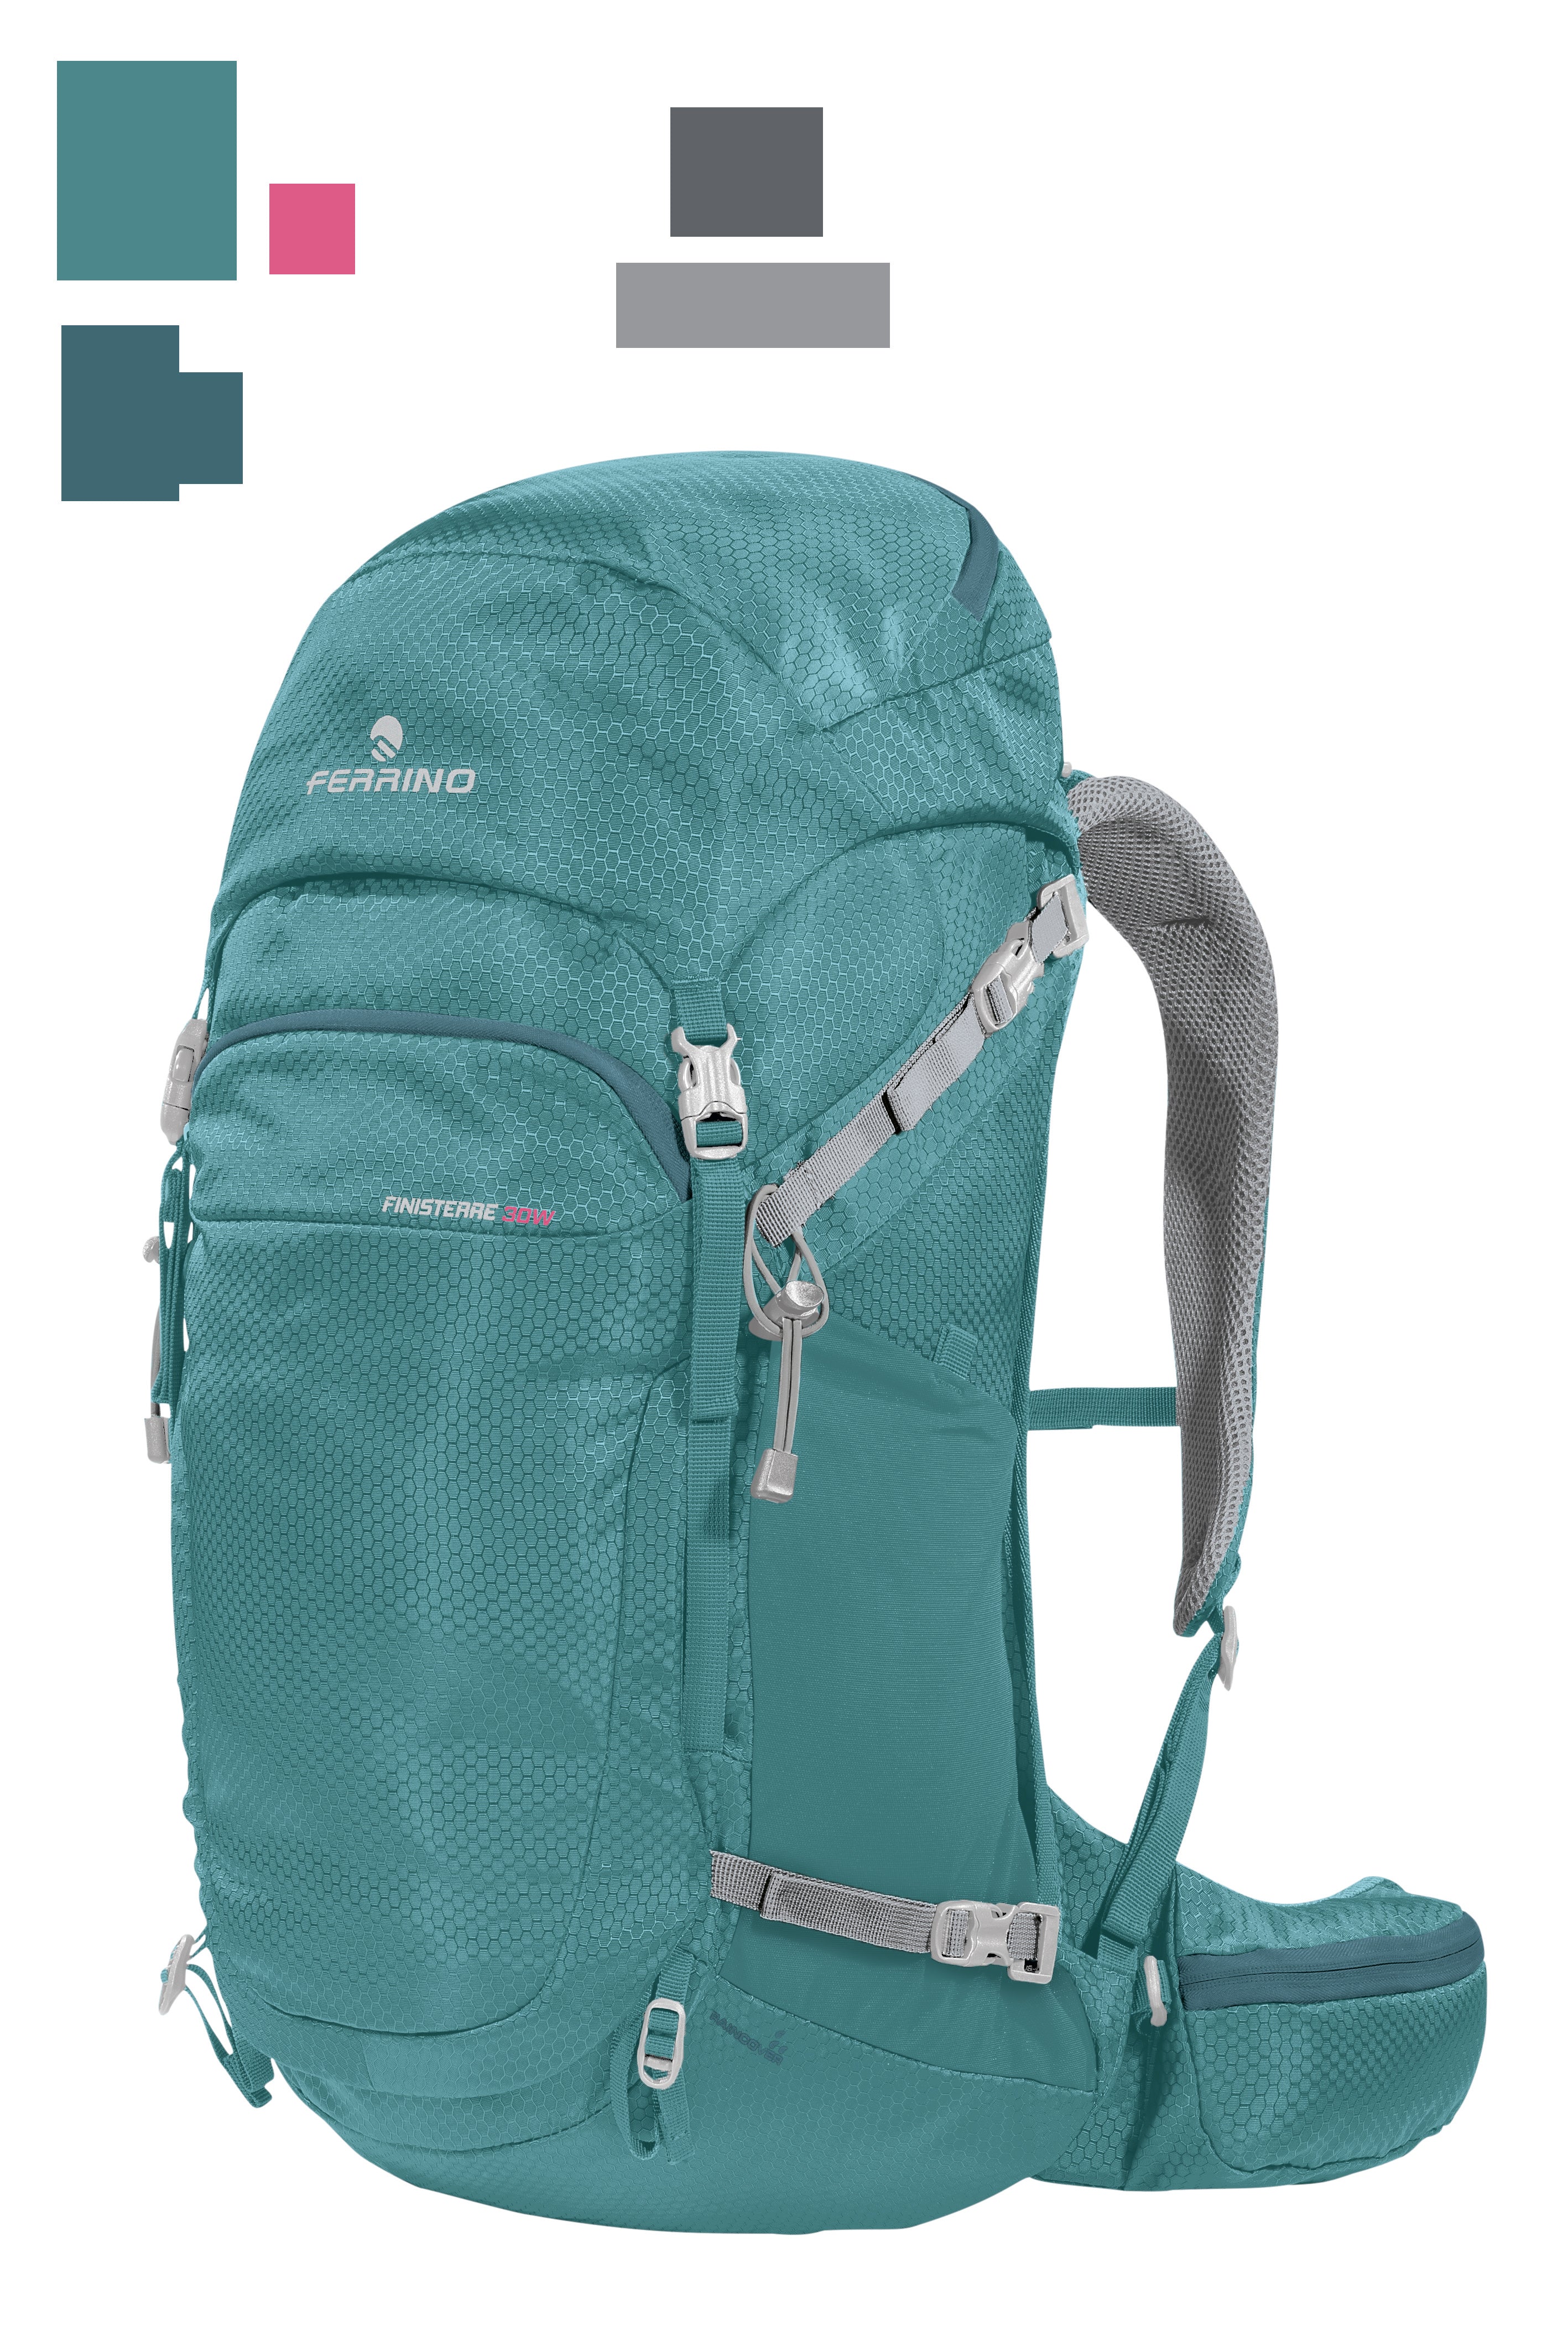 Fenesterre 30 litre backpack